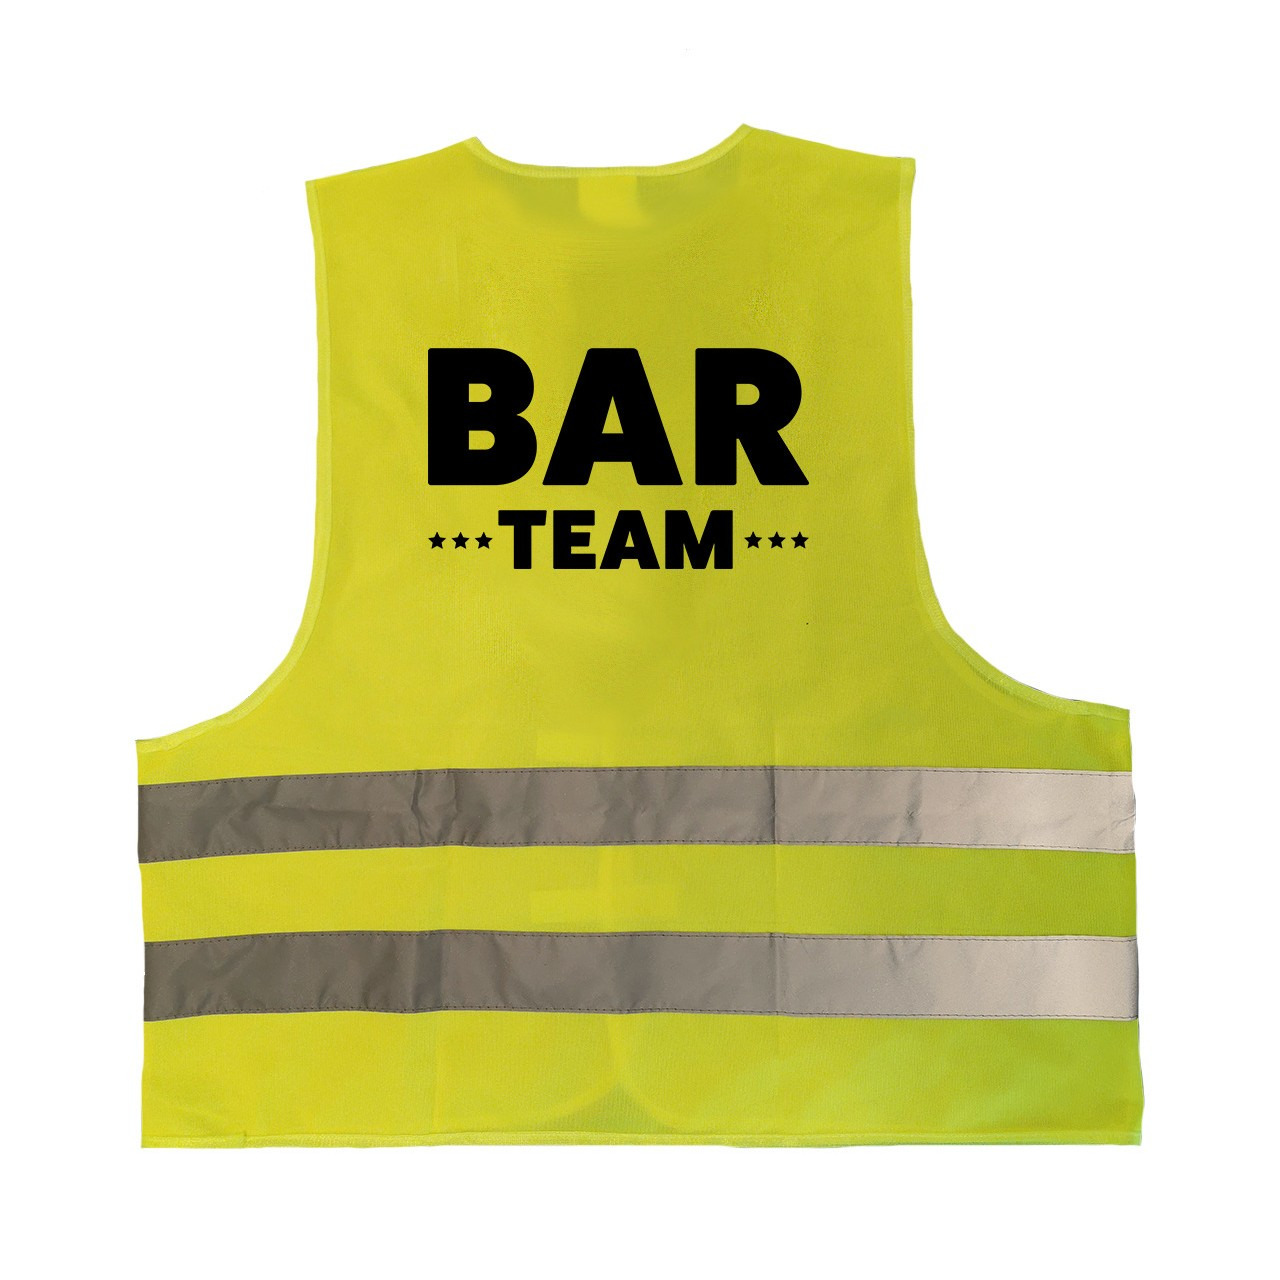 Bar team personeel vestje-hesje geel met reflecterende strepen voor volwassenen